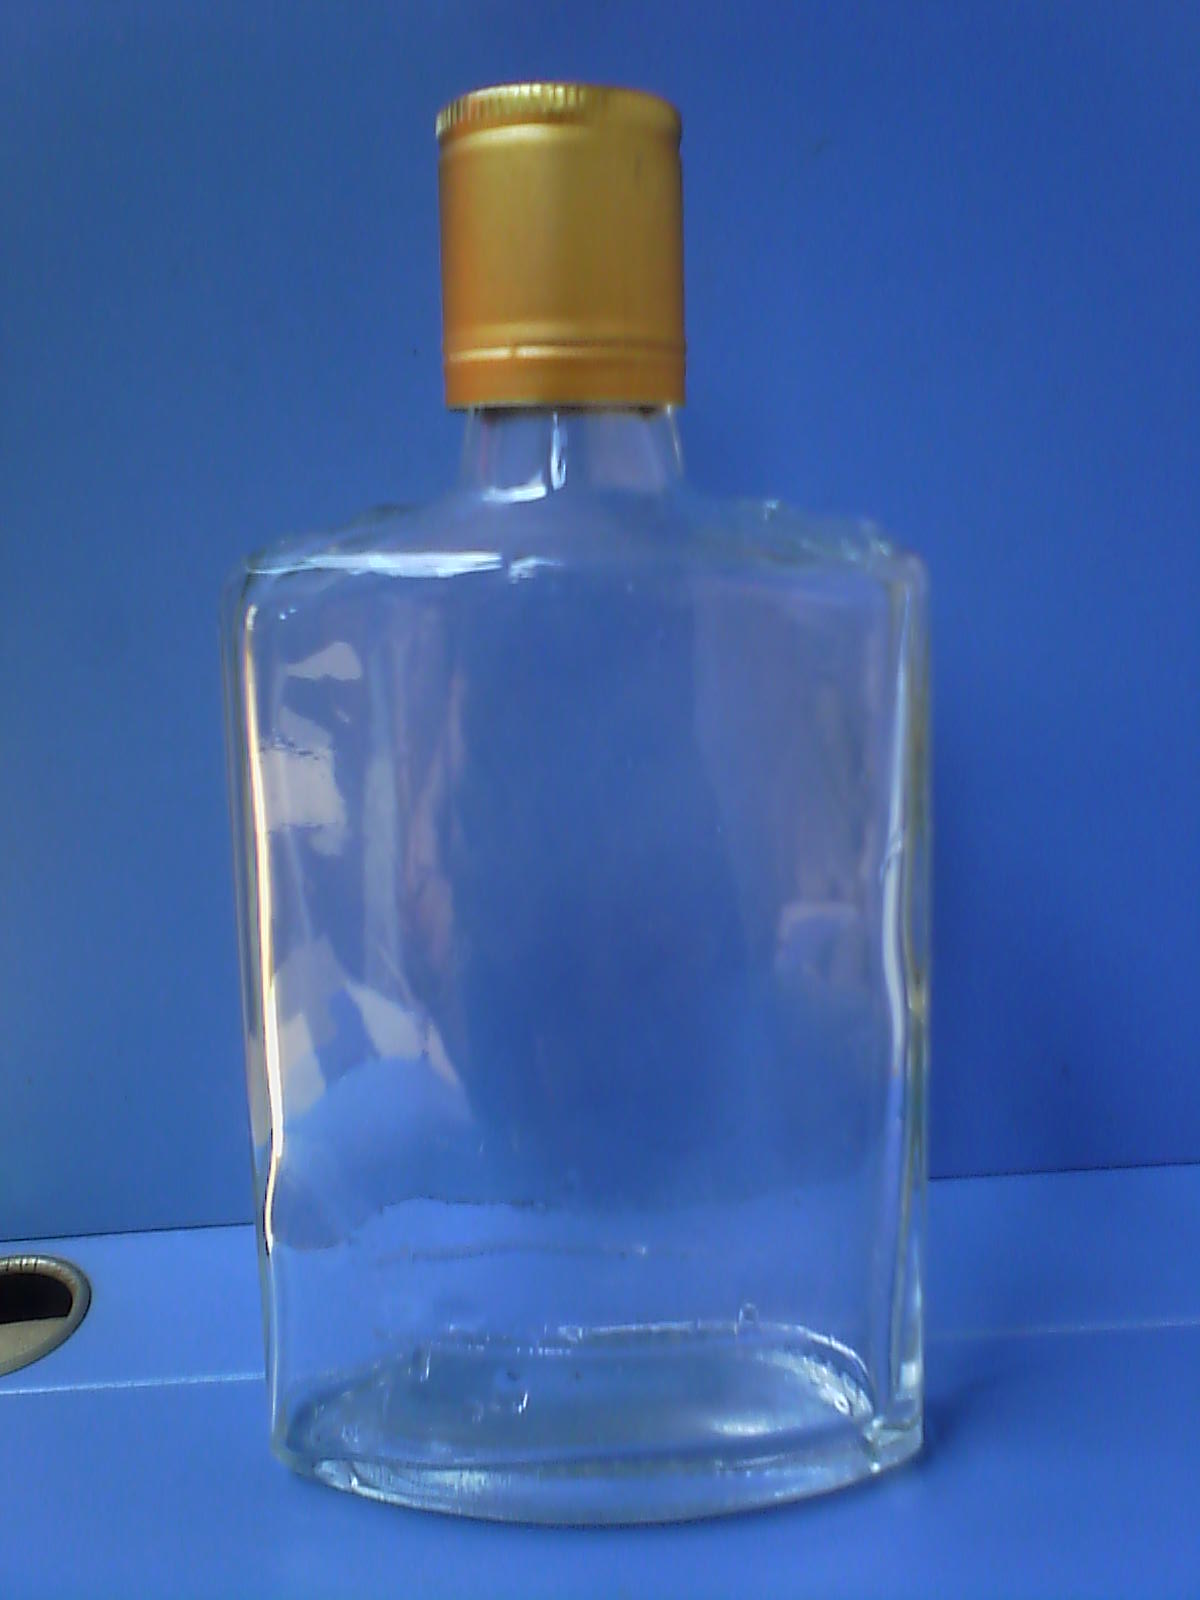 徐州市125毫升保健酒瓶药酒瓶白酒瓶厂家供应125毫升保健酒瓶药酒瓶白酒瓶